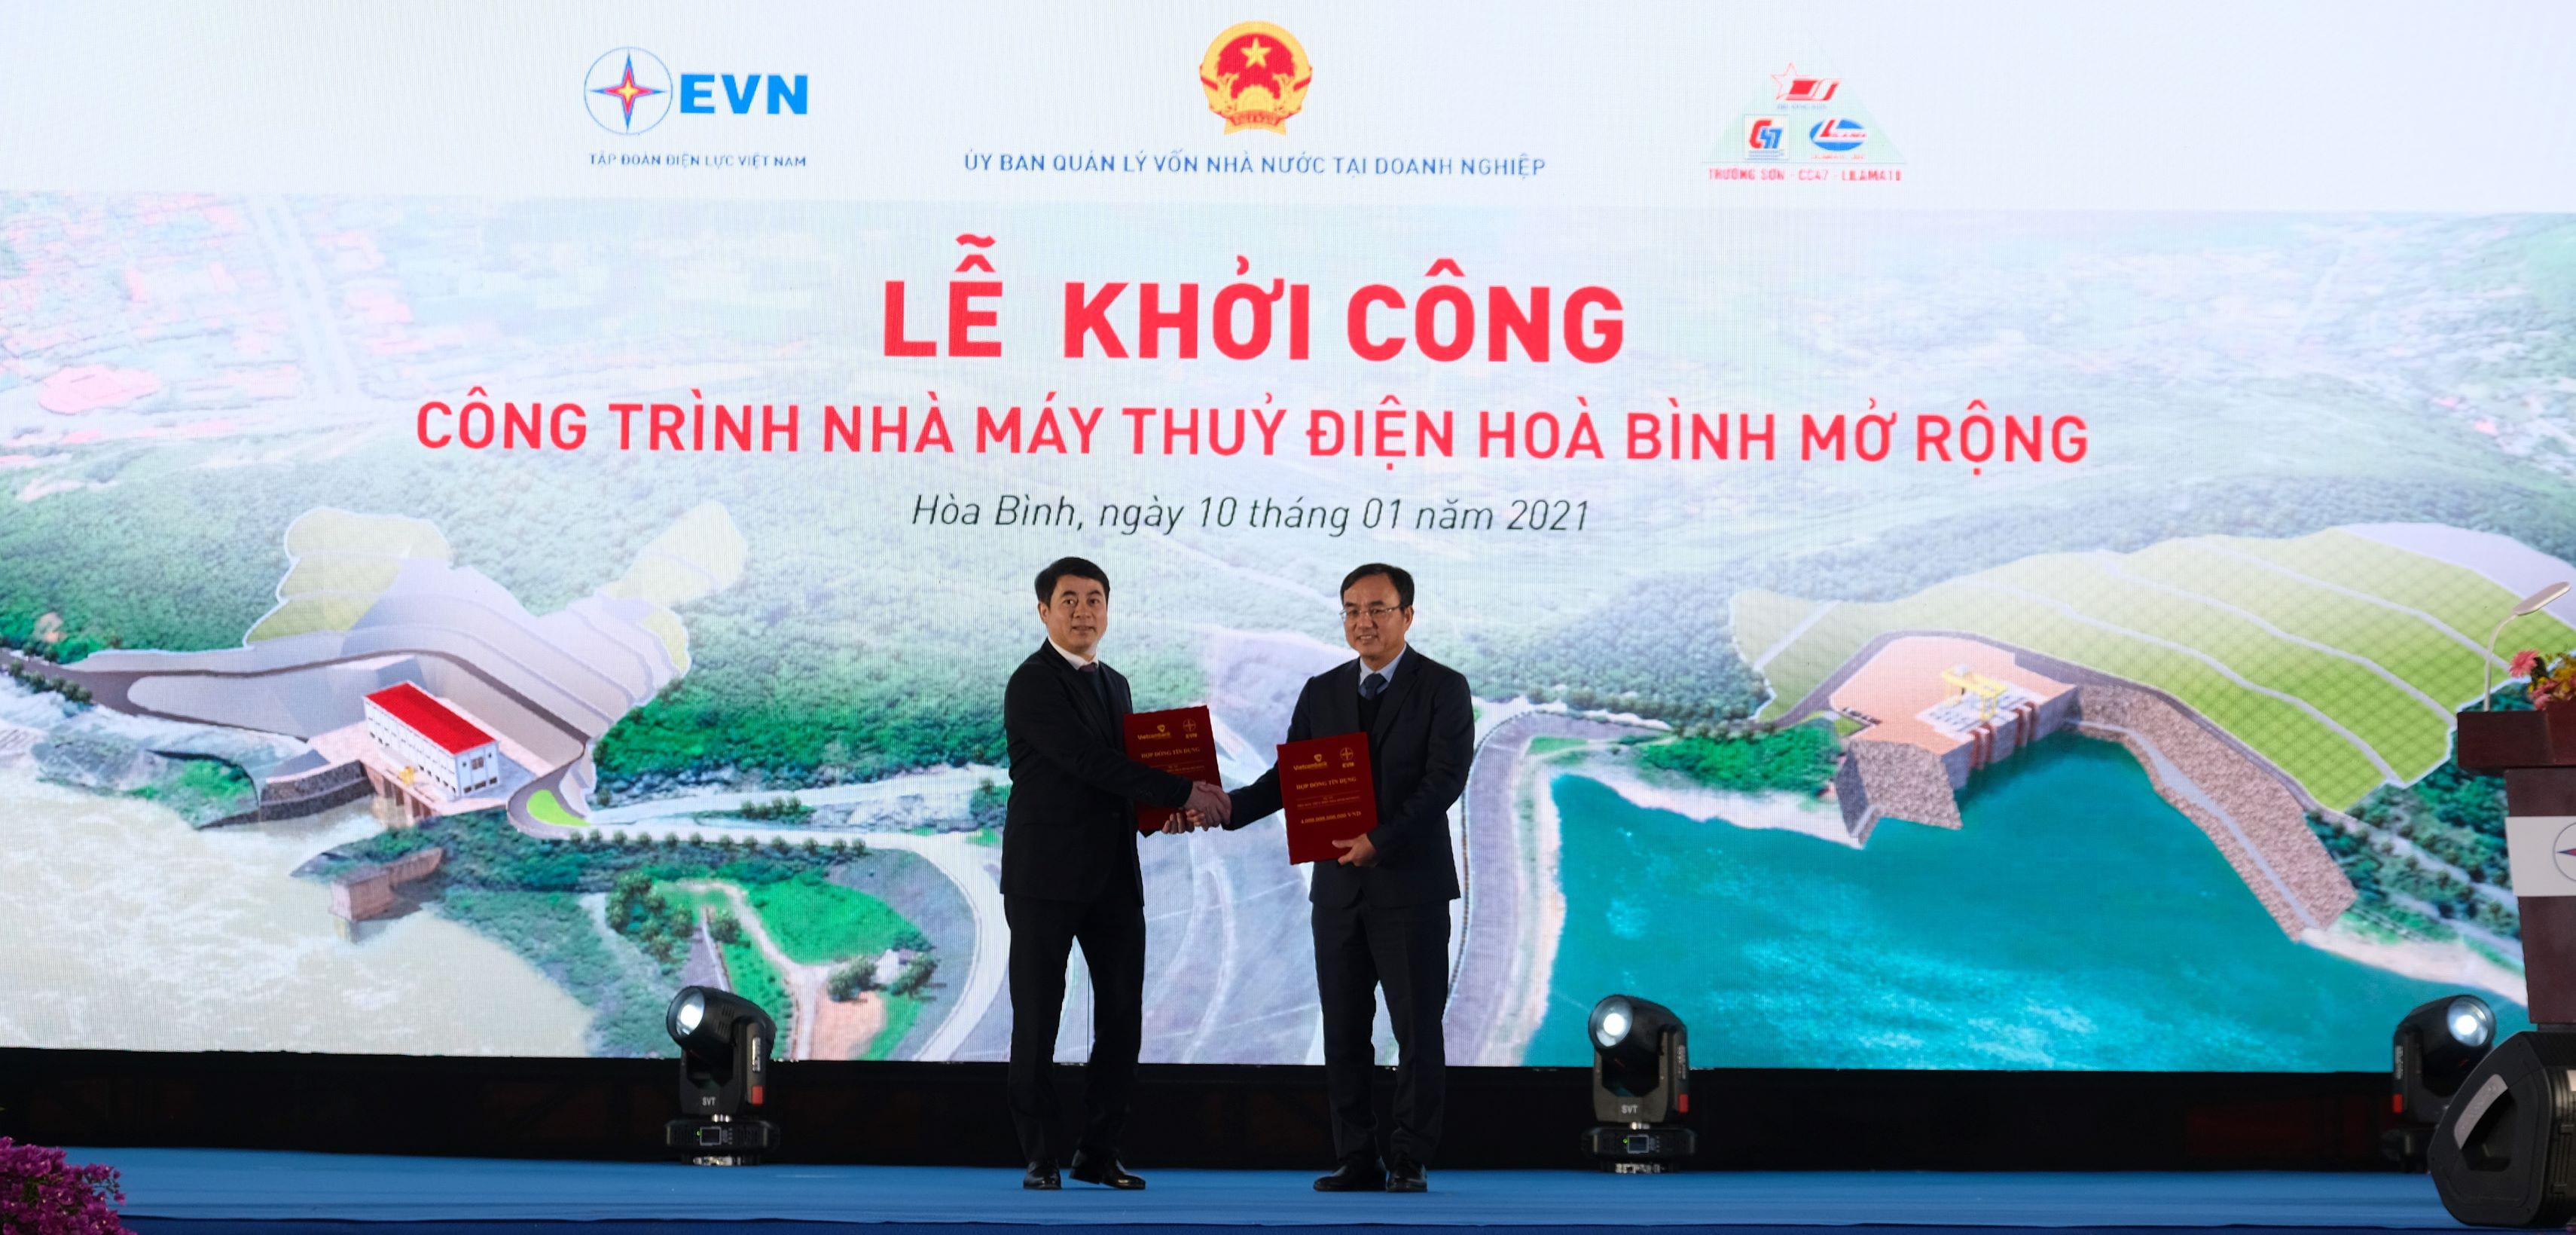 Vietcombank cấp khoản tín dụng 4.000 tỷ đồng tài trợ xây dựng công trình nhà máy thủy điện Hòa Bình mở rộng của Tập đoàn Điện lực Việt Nam - 2